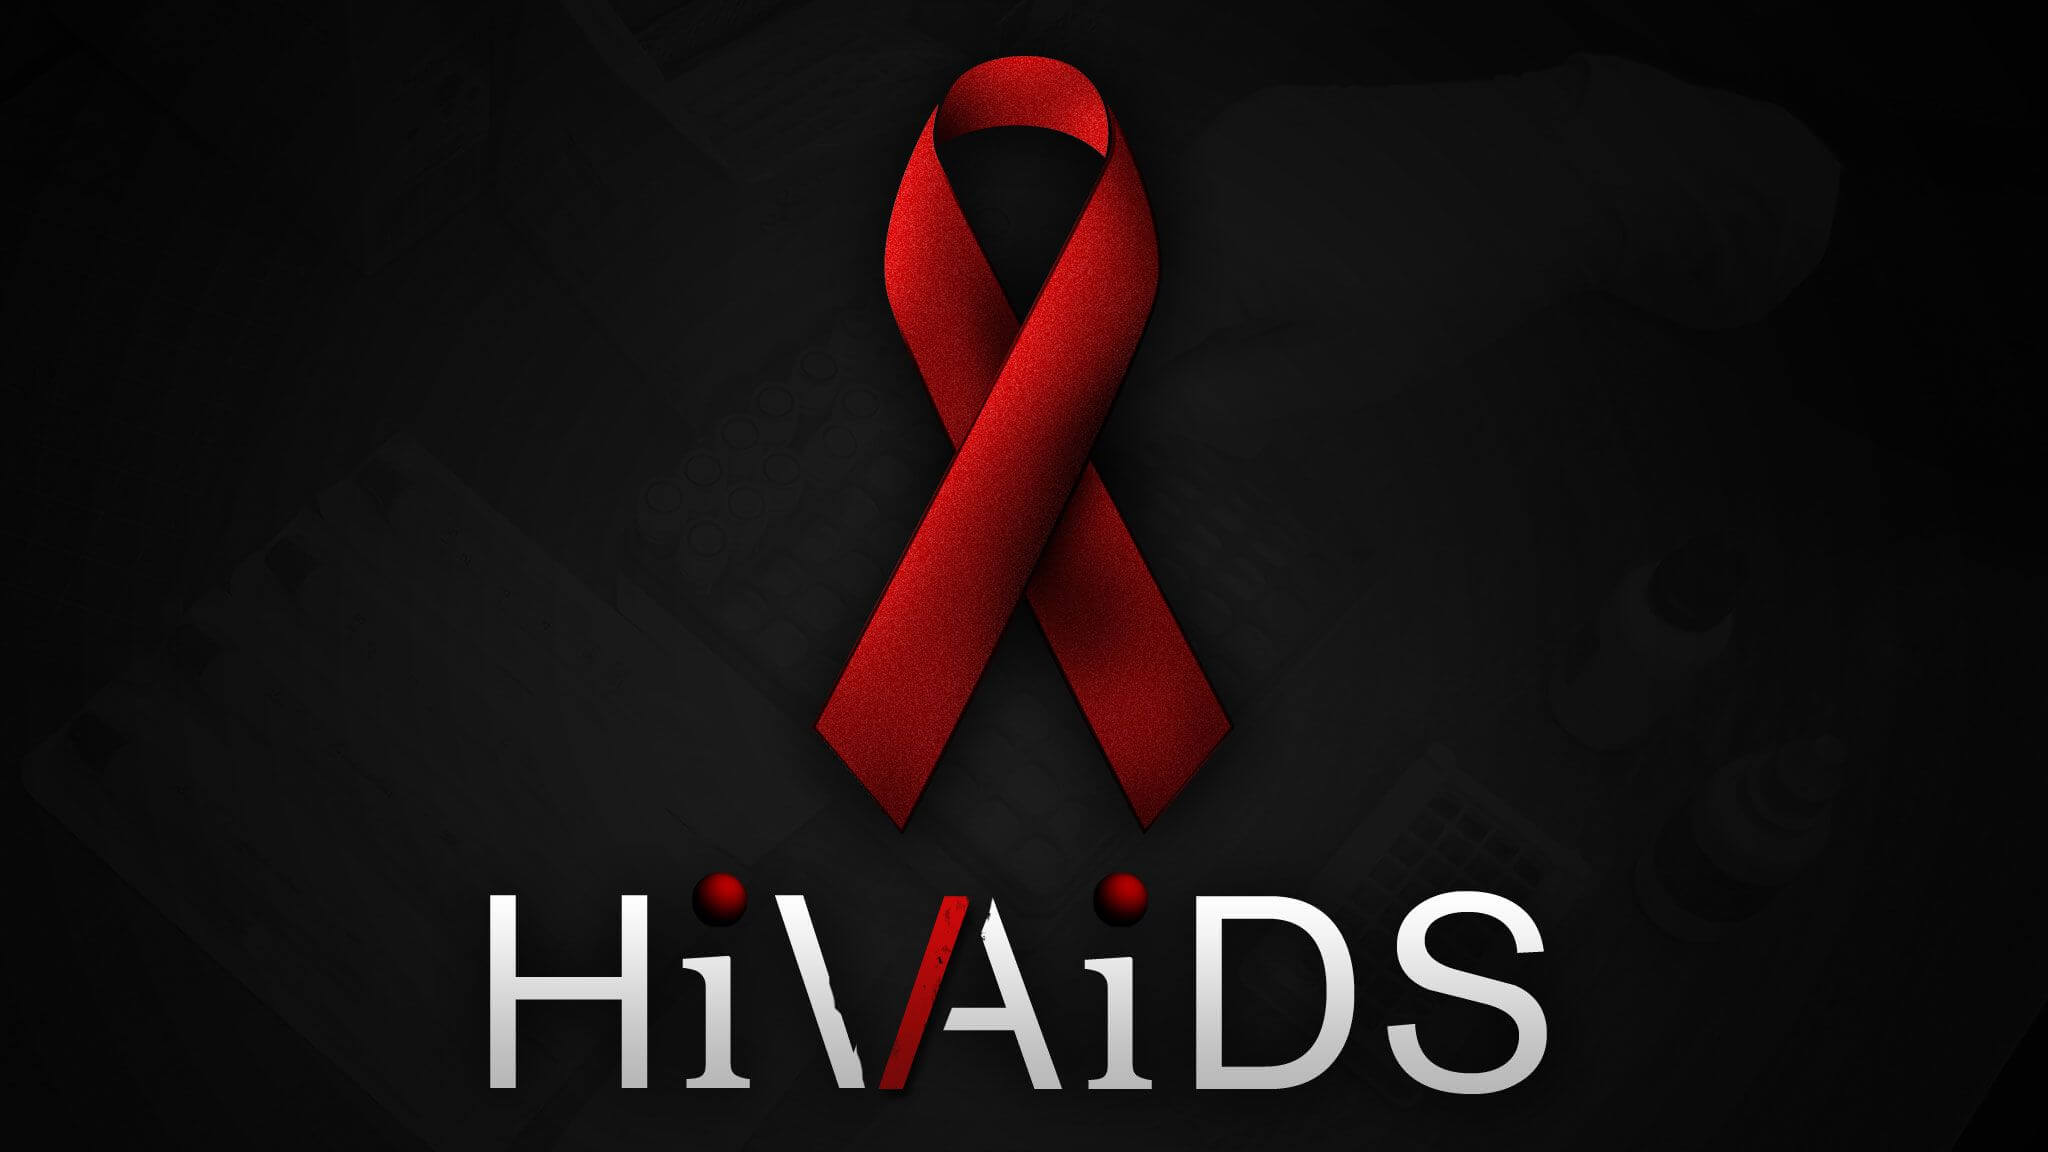 Le 10 più belle canzoni che parlano di HIV, AIDS e sesso sicuro - hiv aids - Gay.it